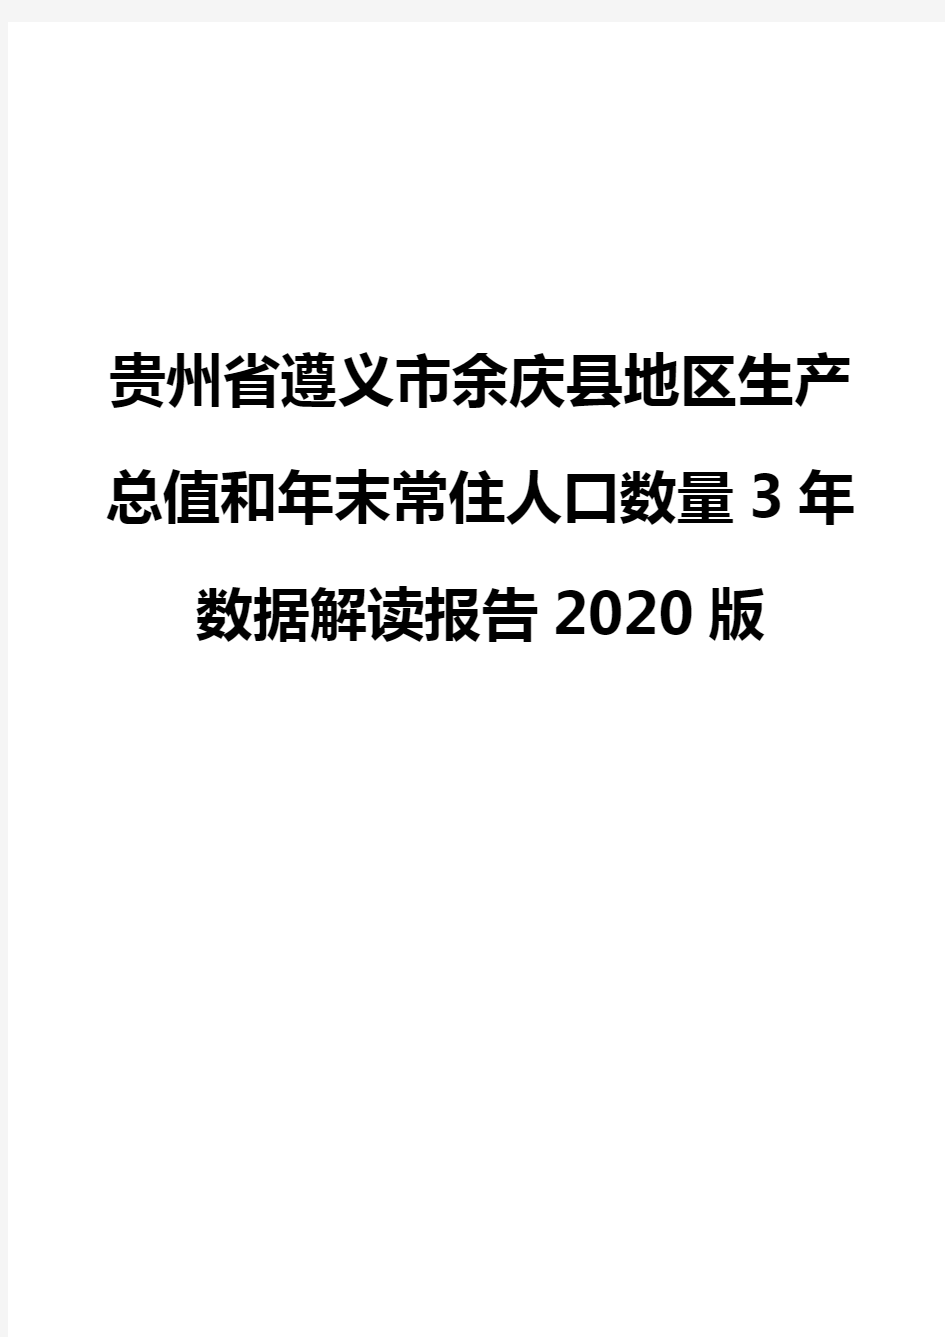 贵州省遵义市余庆县地区生产总值和年末常住人口数量3年数据解读报告2020版